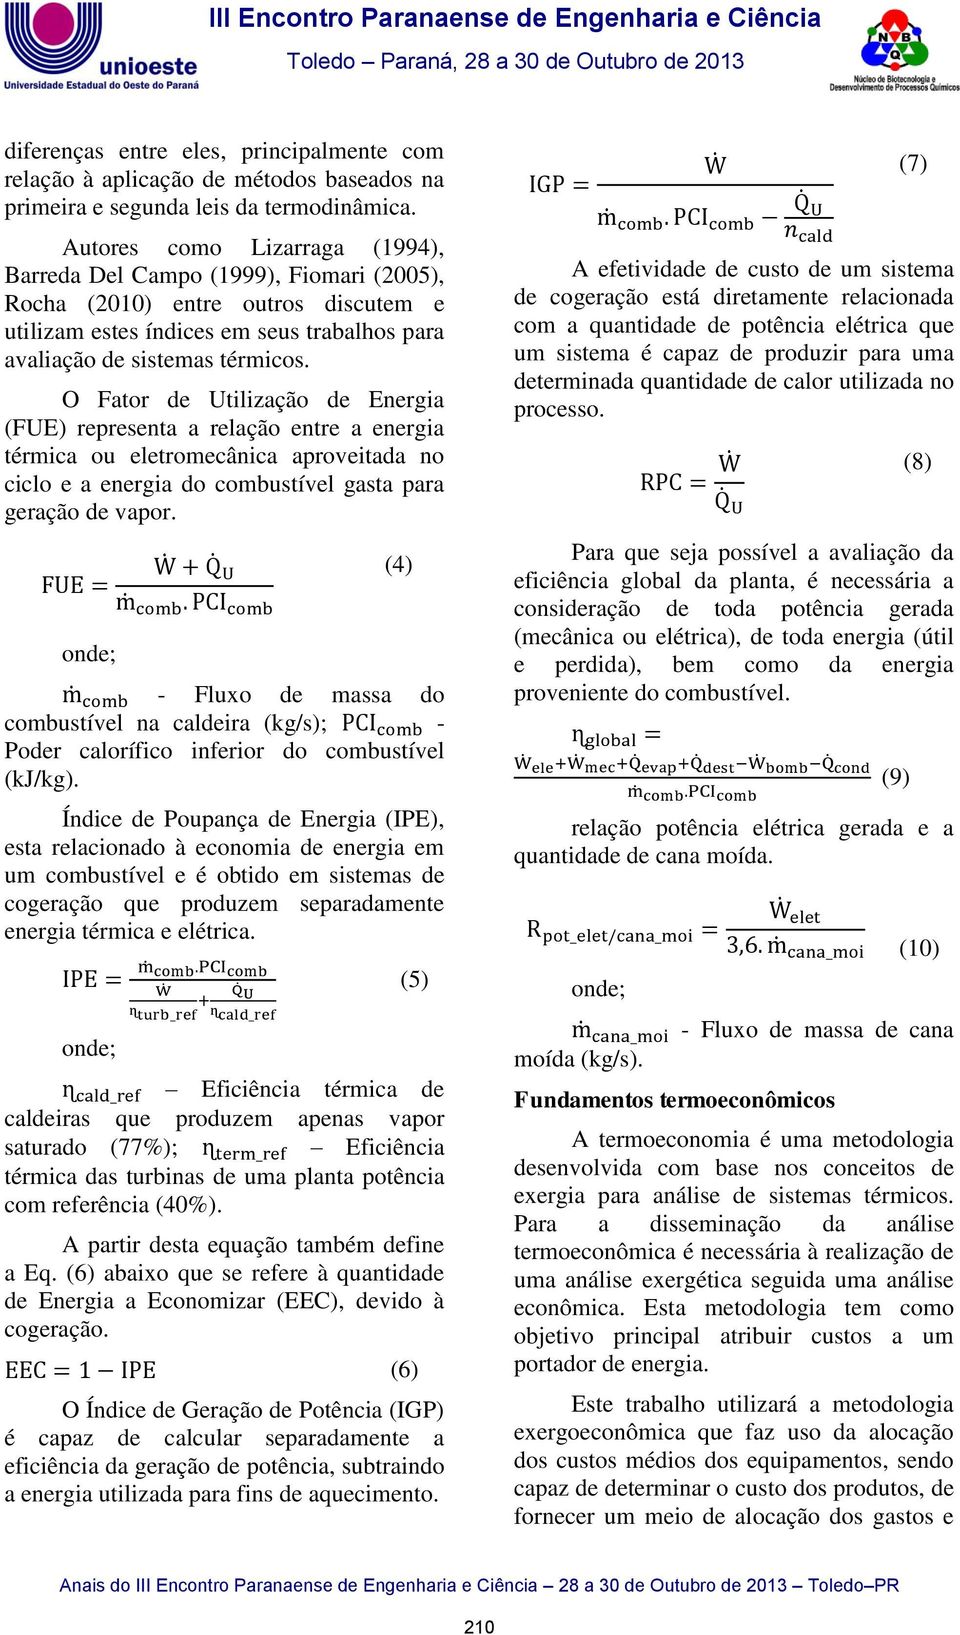 Autores como Lizarraga (1994), Barreda Del Campo (1999), Fiomari (2005), Rocha (2010) entre outros discutem e utilizam estes índices em seus trabalhos para avaliação de sistemas térmicos.